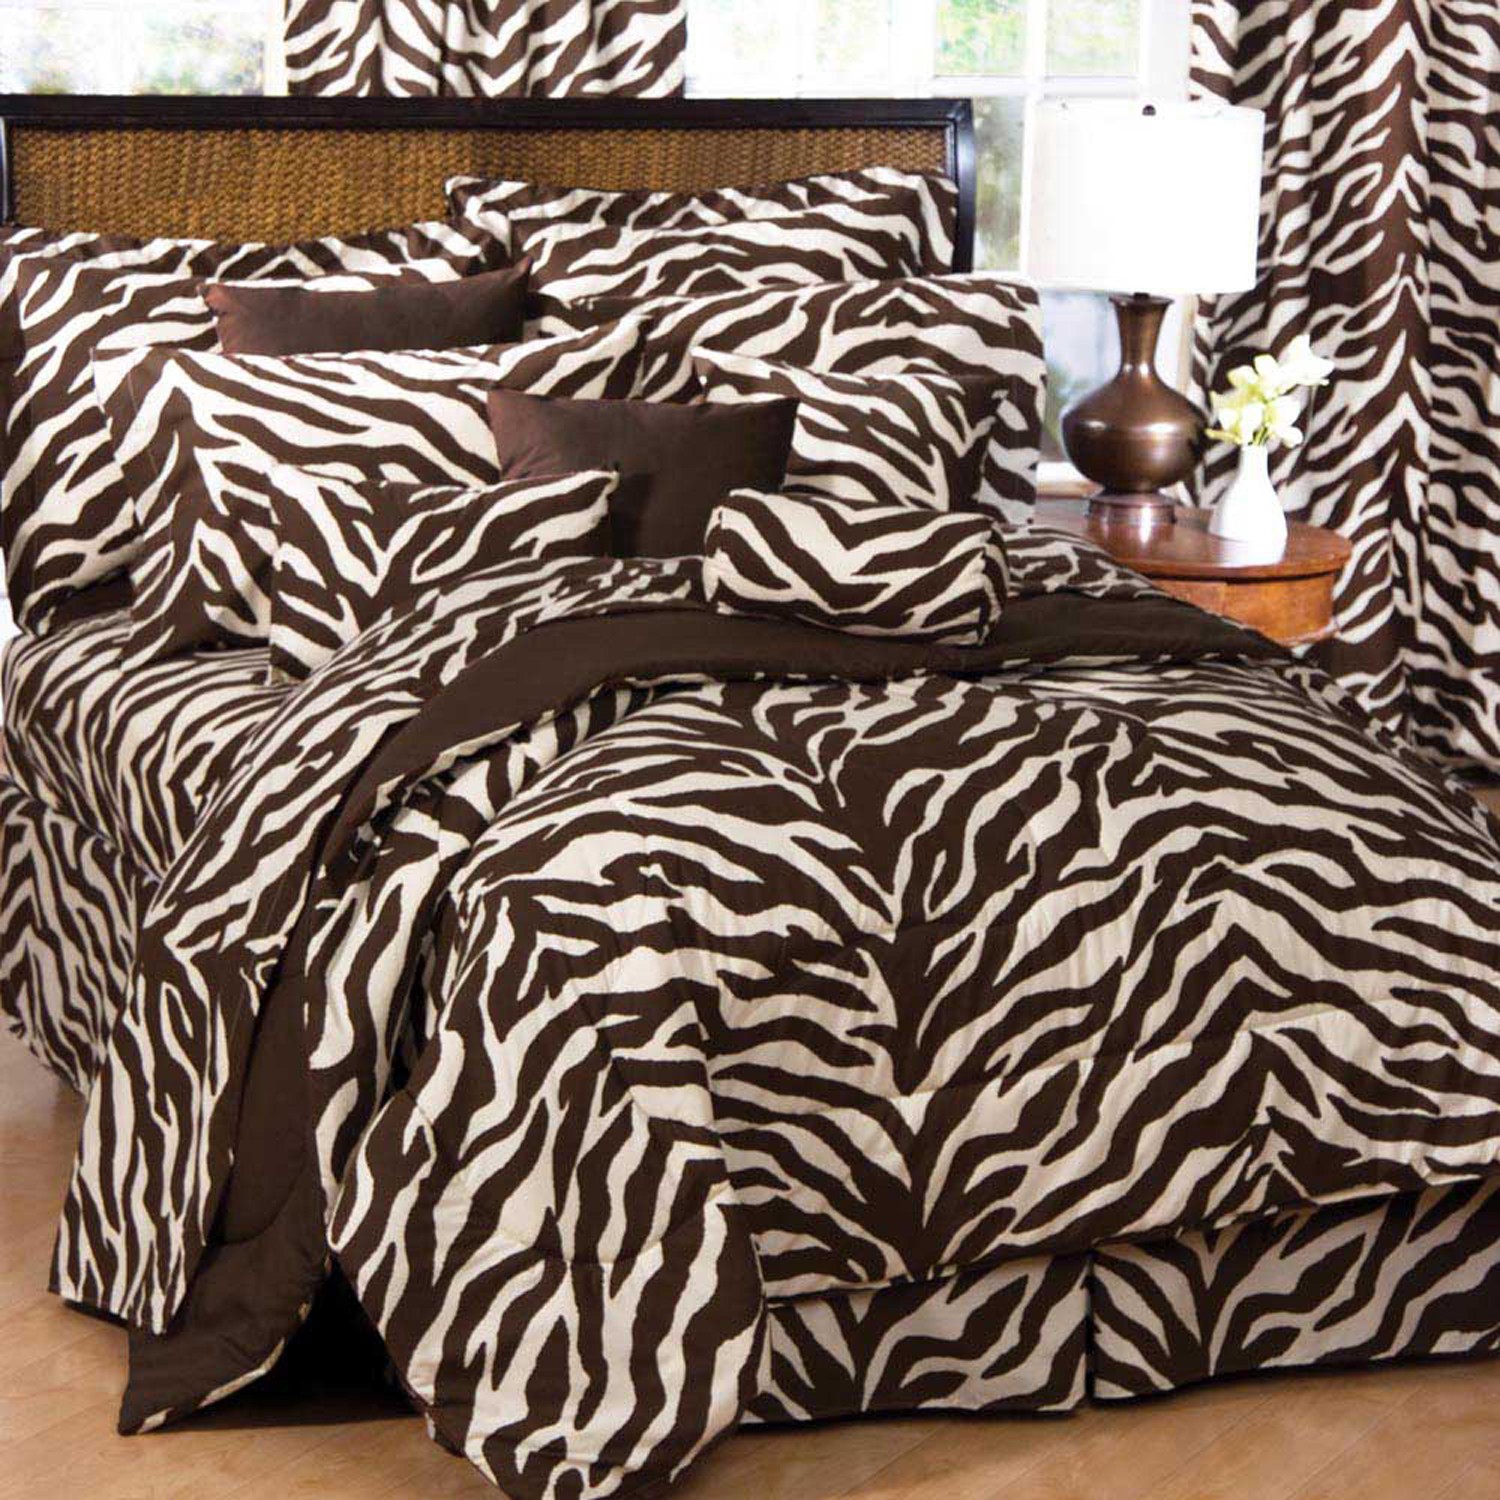 Zebra постельное белье